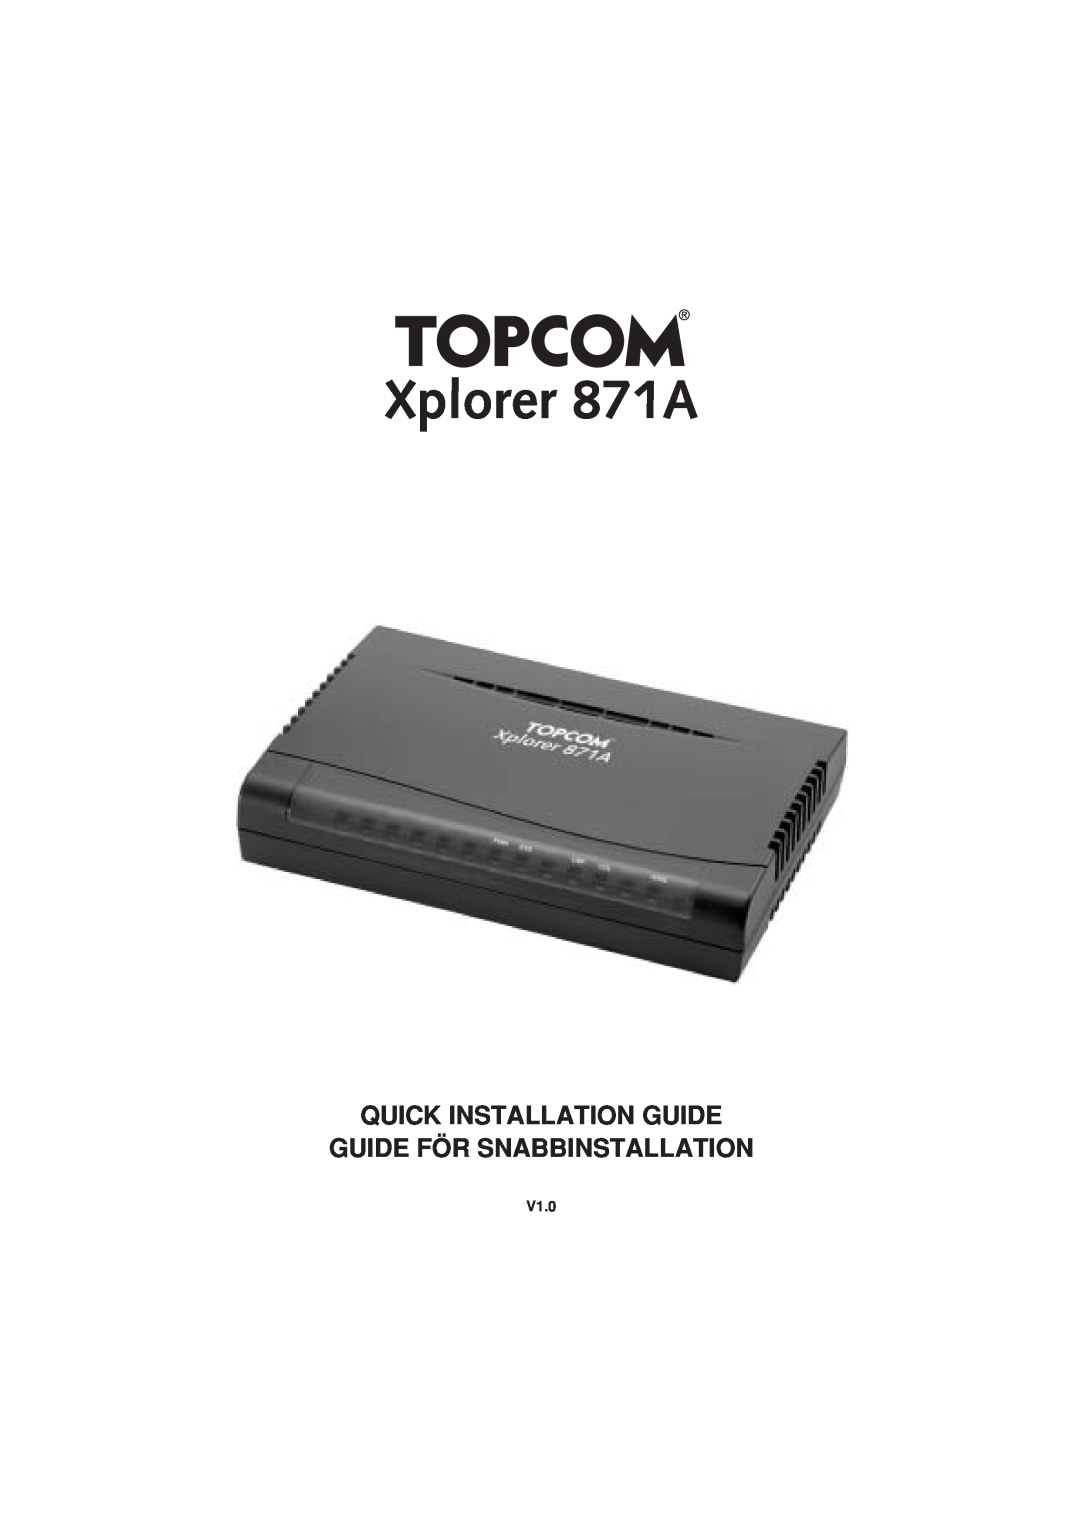 Topcom manual V1.0, Xplorer 871A, Quick Installation Guide Guide För Snabbinstallation 